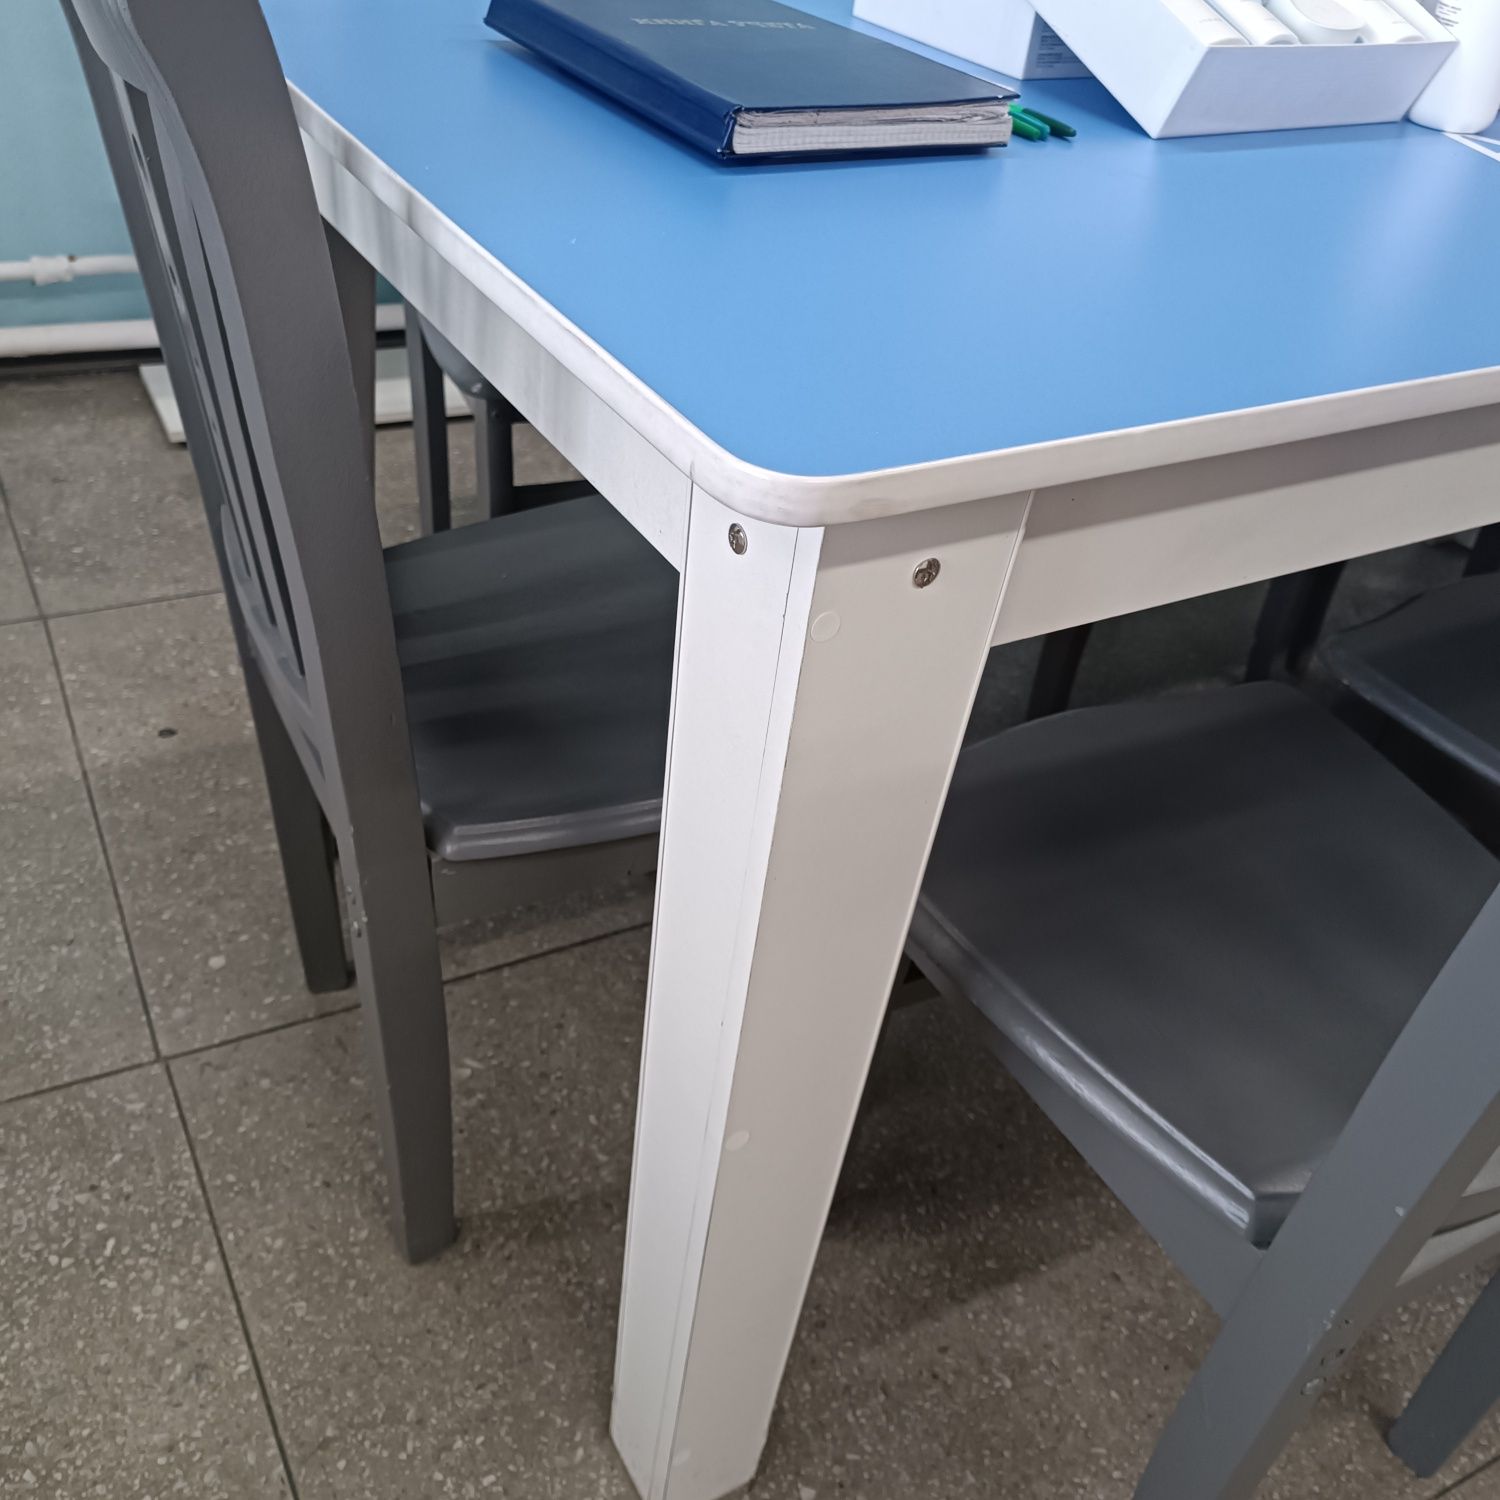 Продам большой стол для офиса  85×185  очень качественный ..цена 50 т